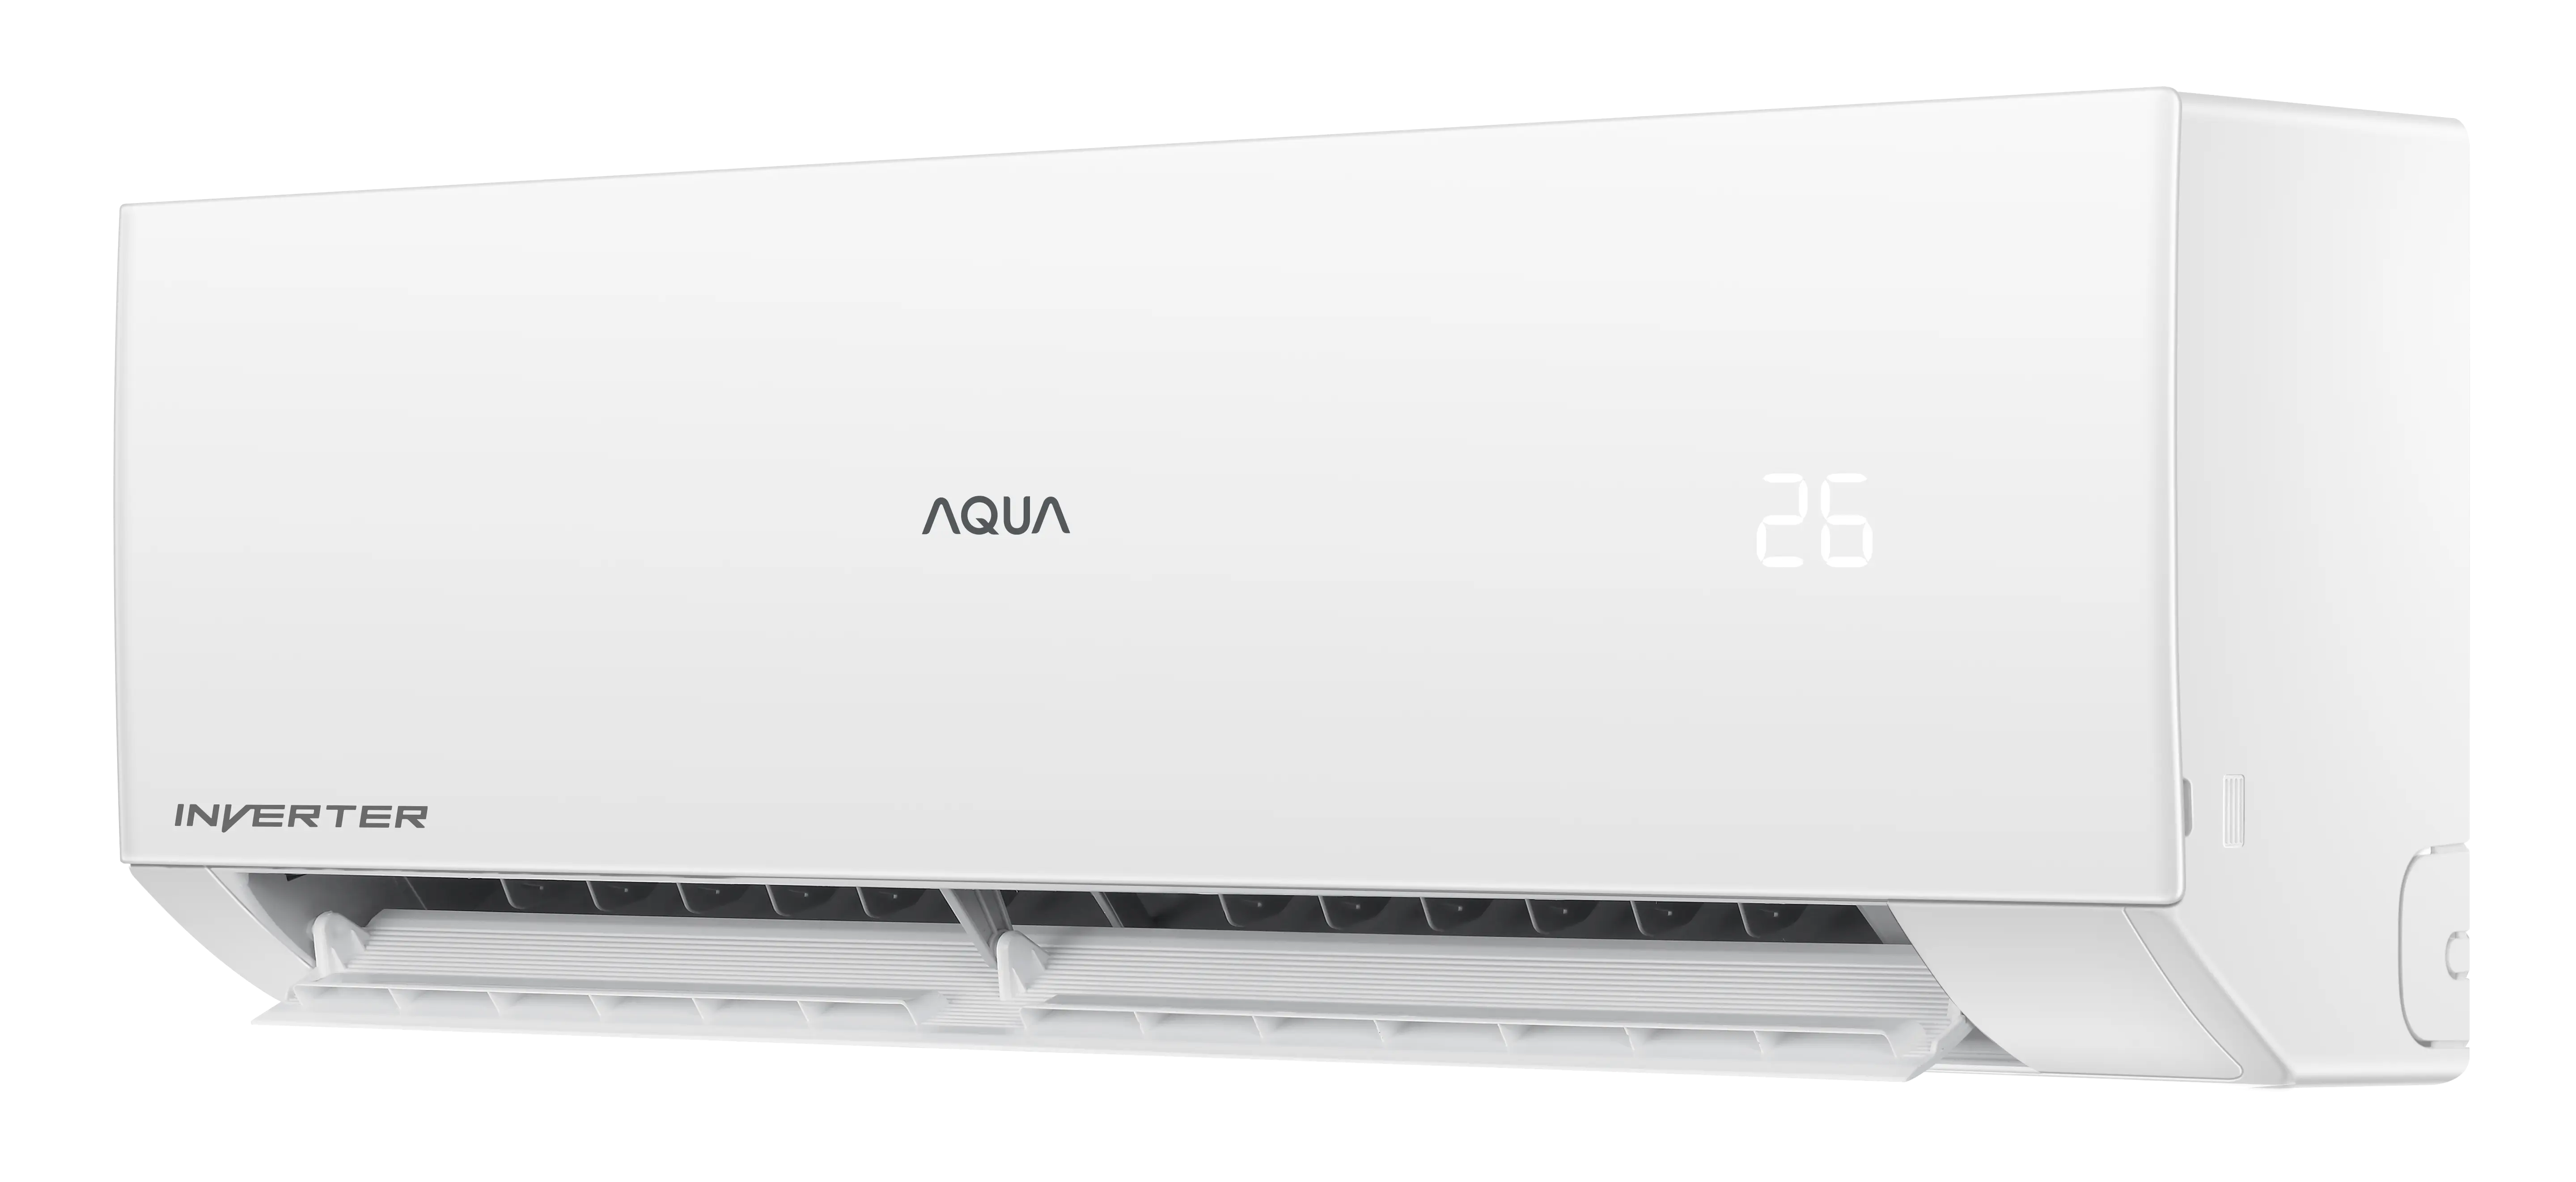 Máy Lạnh Aqua AQA-RV24QA2 Inverter 2.5HP - Hàng Chính Hãng (Chỉ giao HCM)